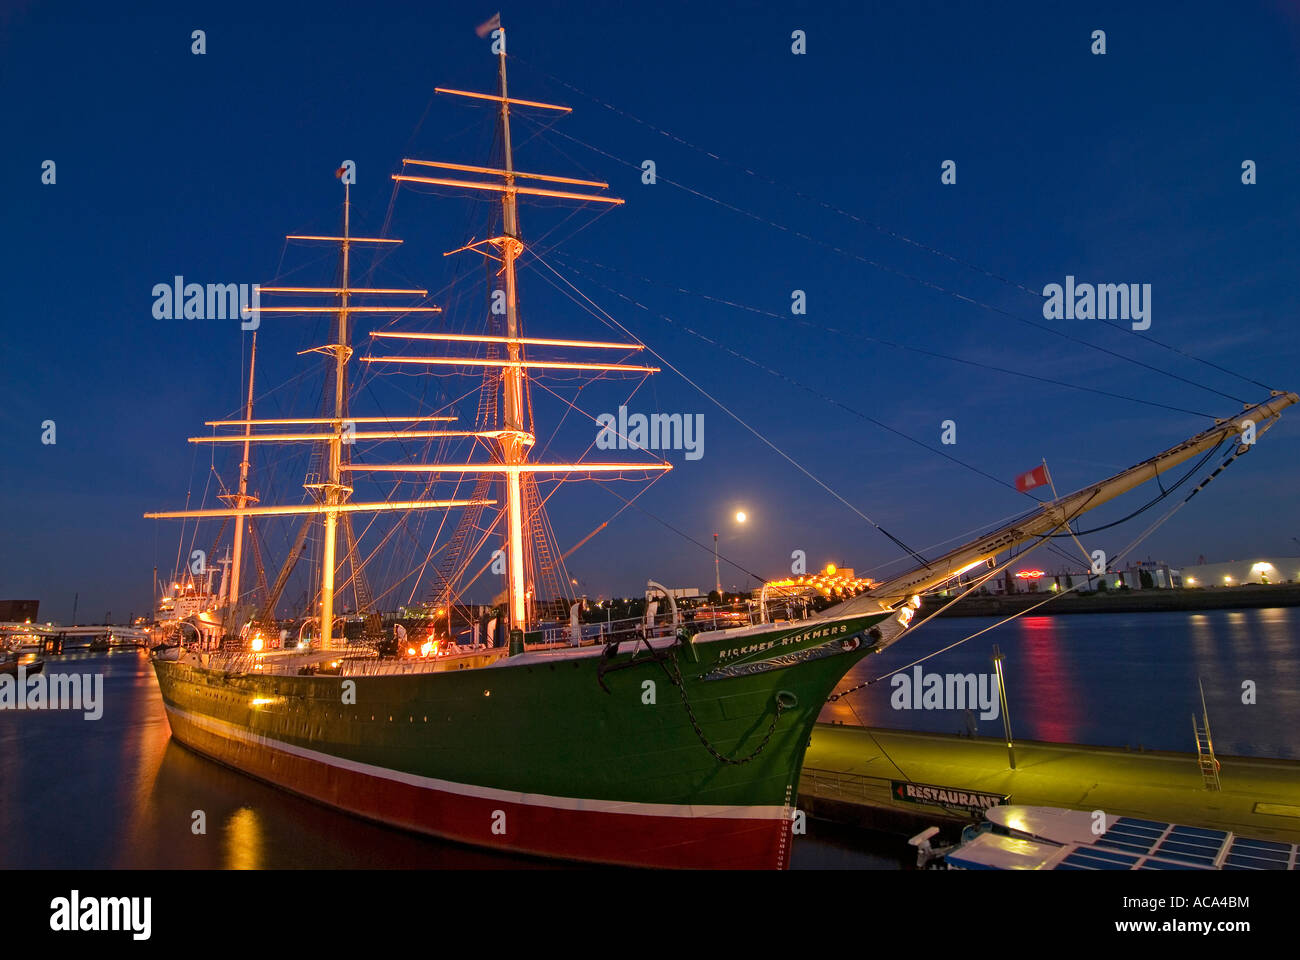 Storica nave a vela Rickmer Rickmers al porto di Amburgo al crepuscolo, Amburgo, Germania Foto Stock